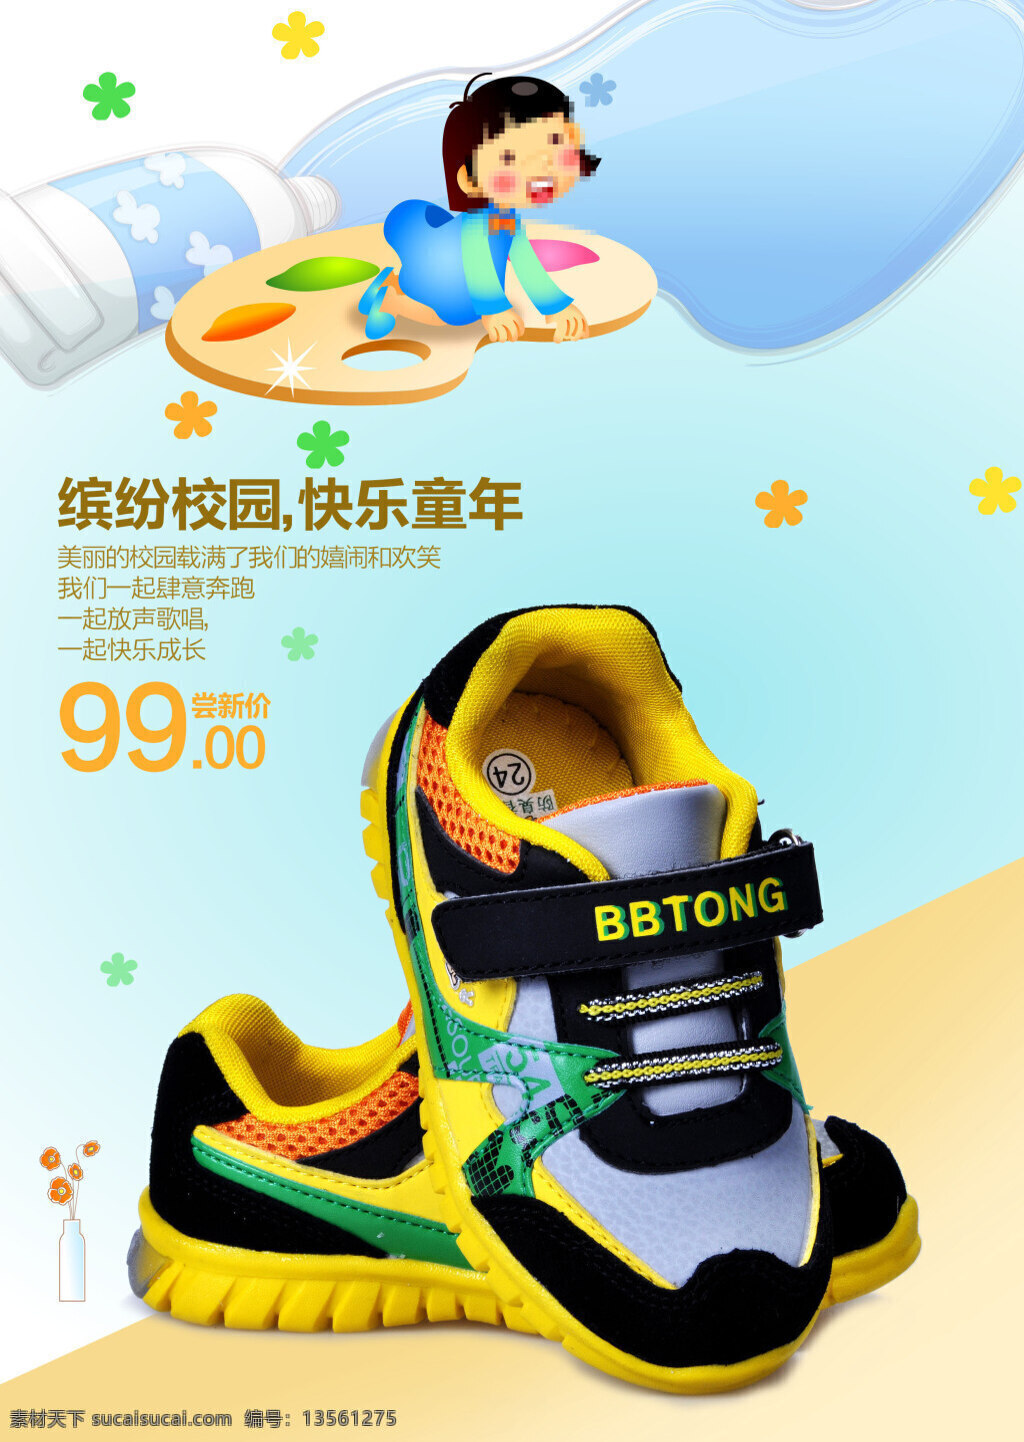 快乐 童年 童鞋 促销 产品促销 活动海报 详情页海报 首页海报 黄色